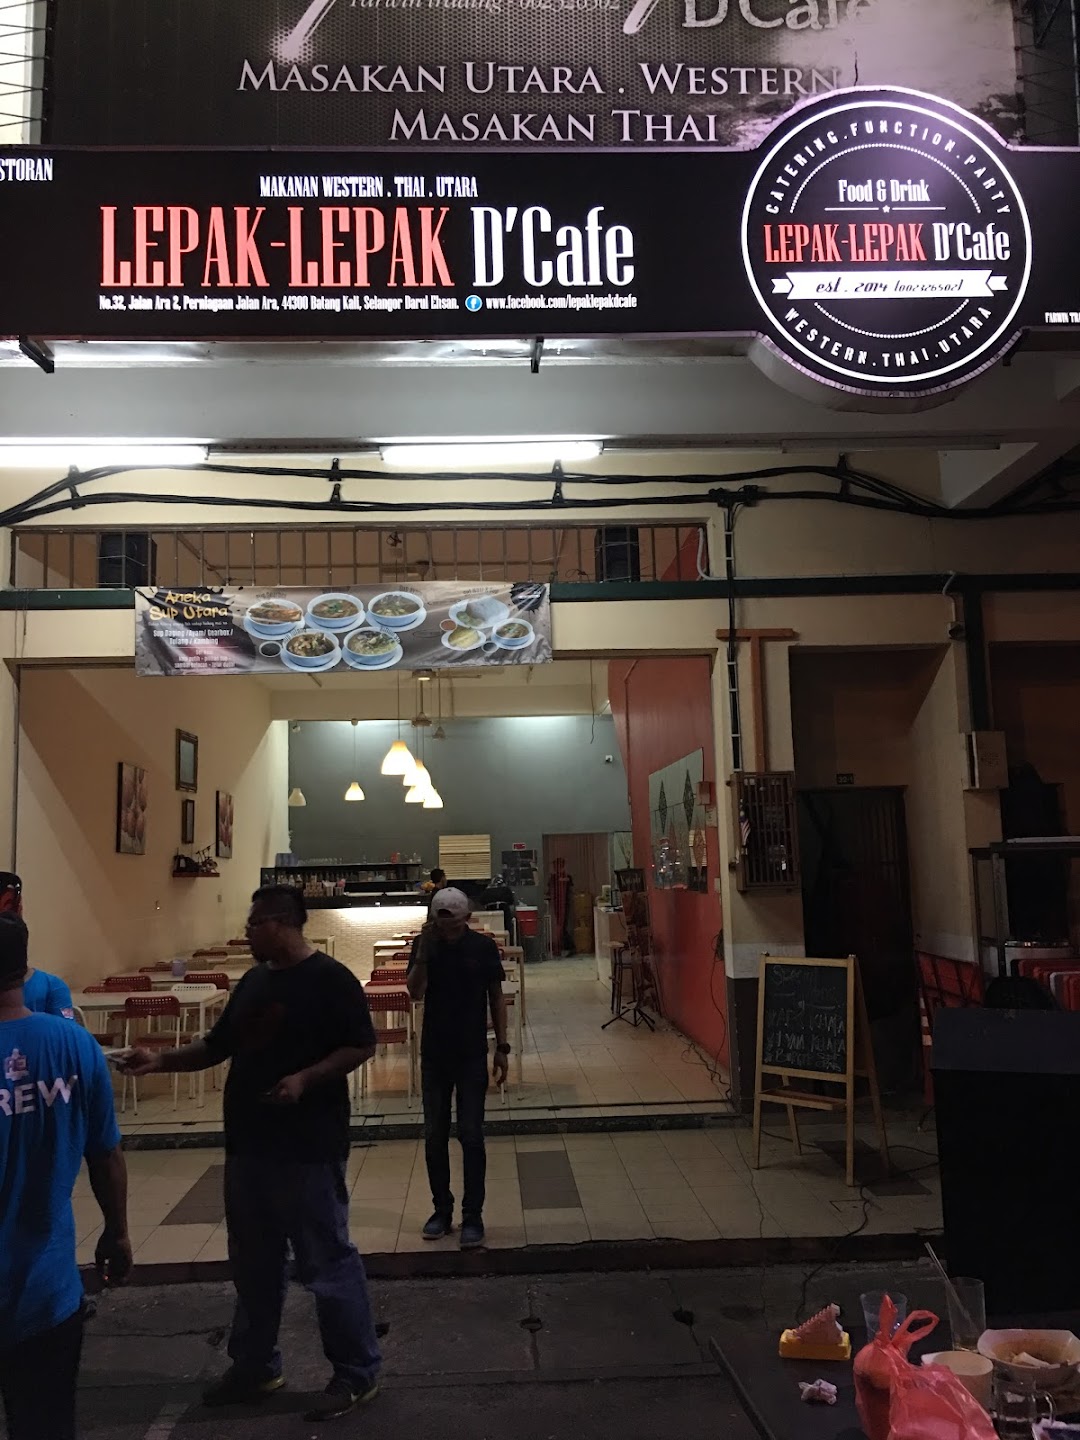 LepakLepak Dcafe